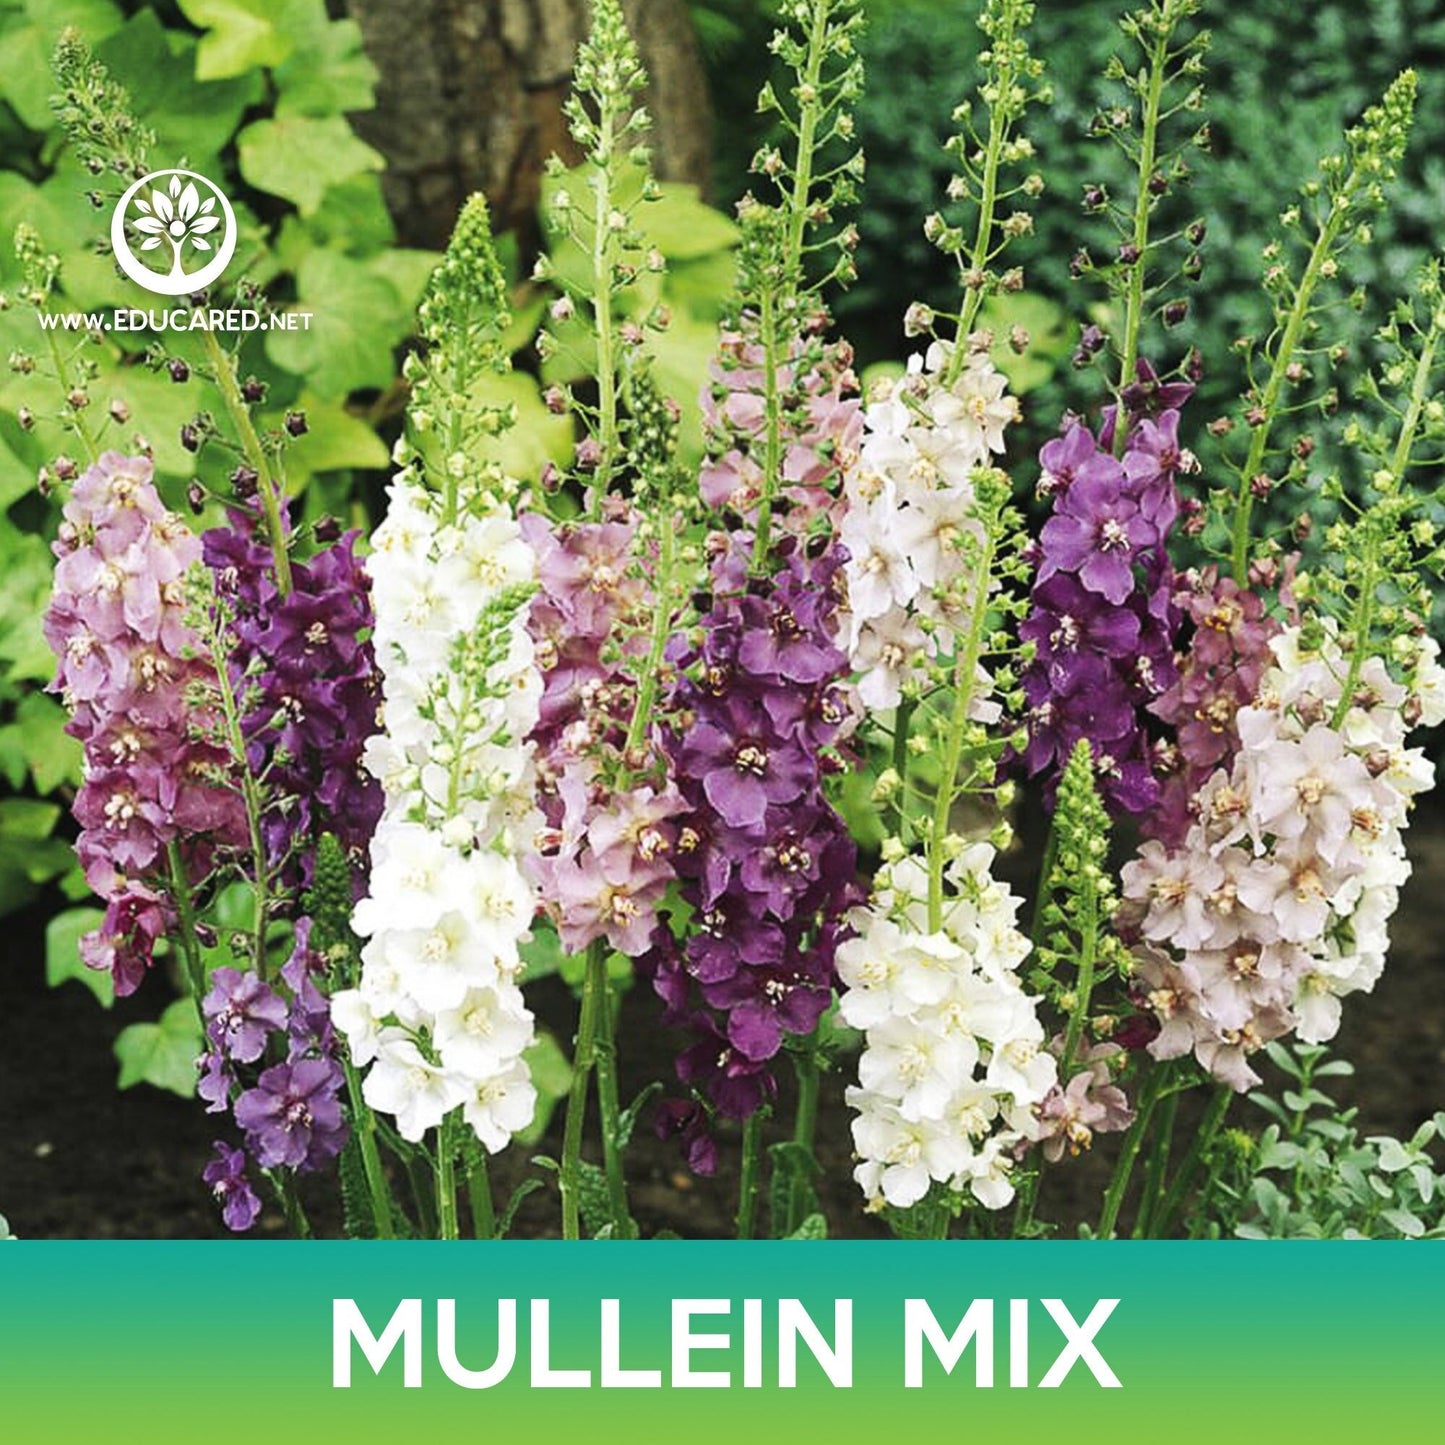 Mullein Flower Mix Seeds, Verbascum Mix, Verbascum phoeniceum